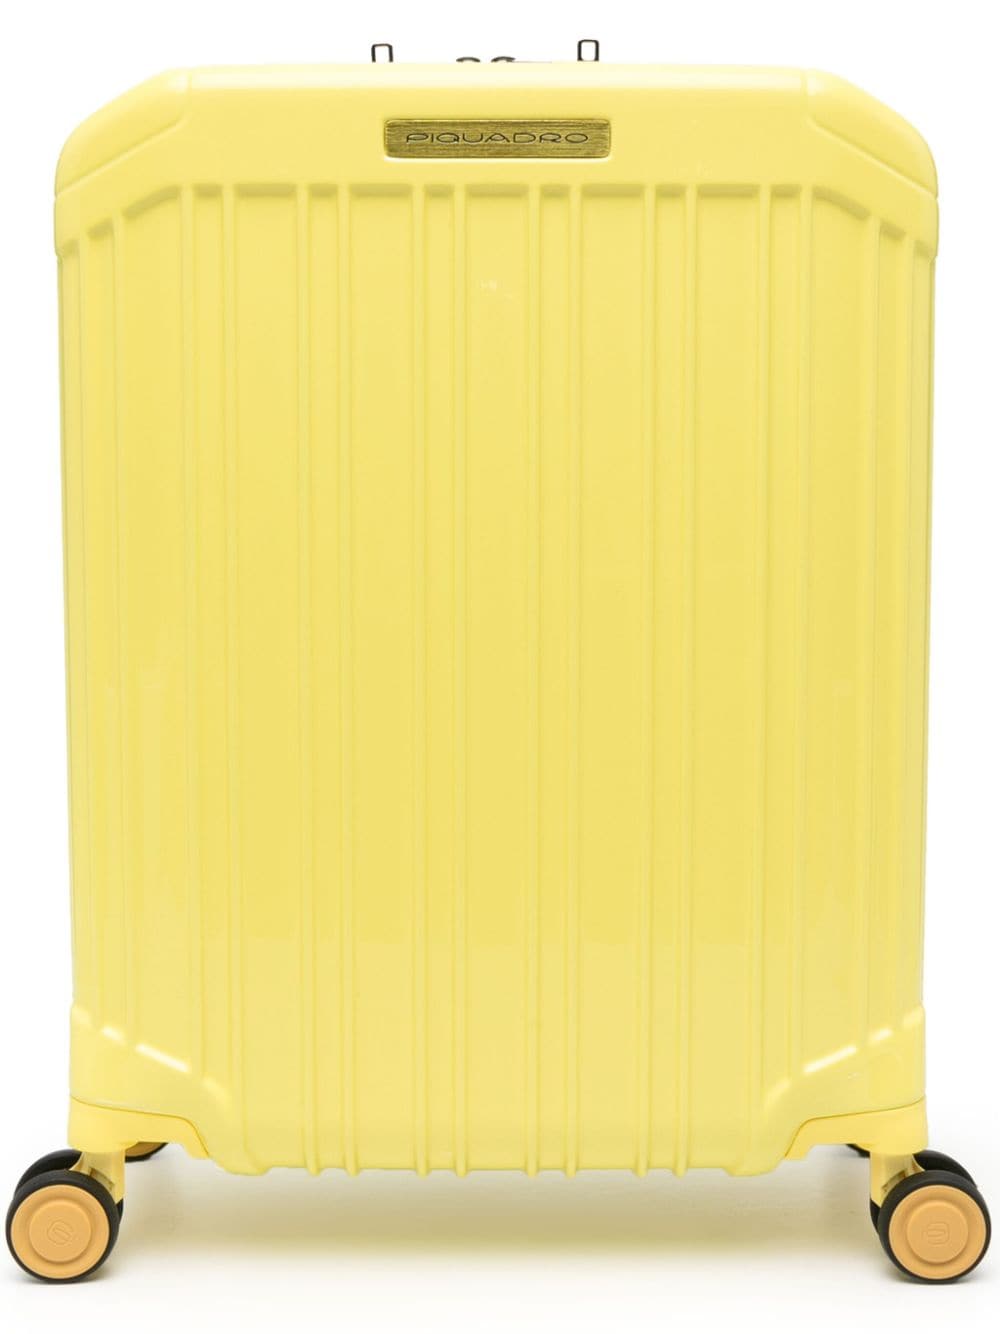 PIQUADRO logo-plaque four-wheels suitcase - Yellow von PIQUADRO